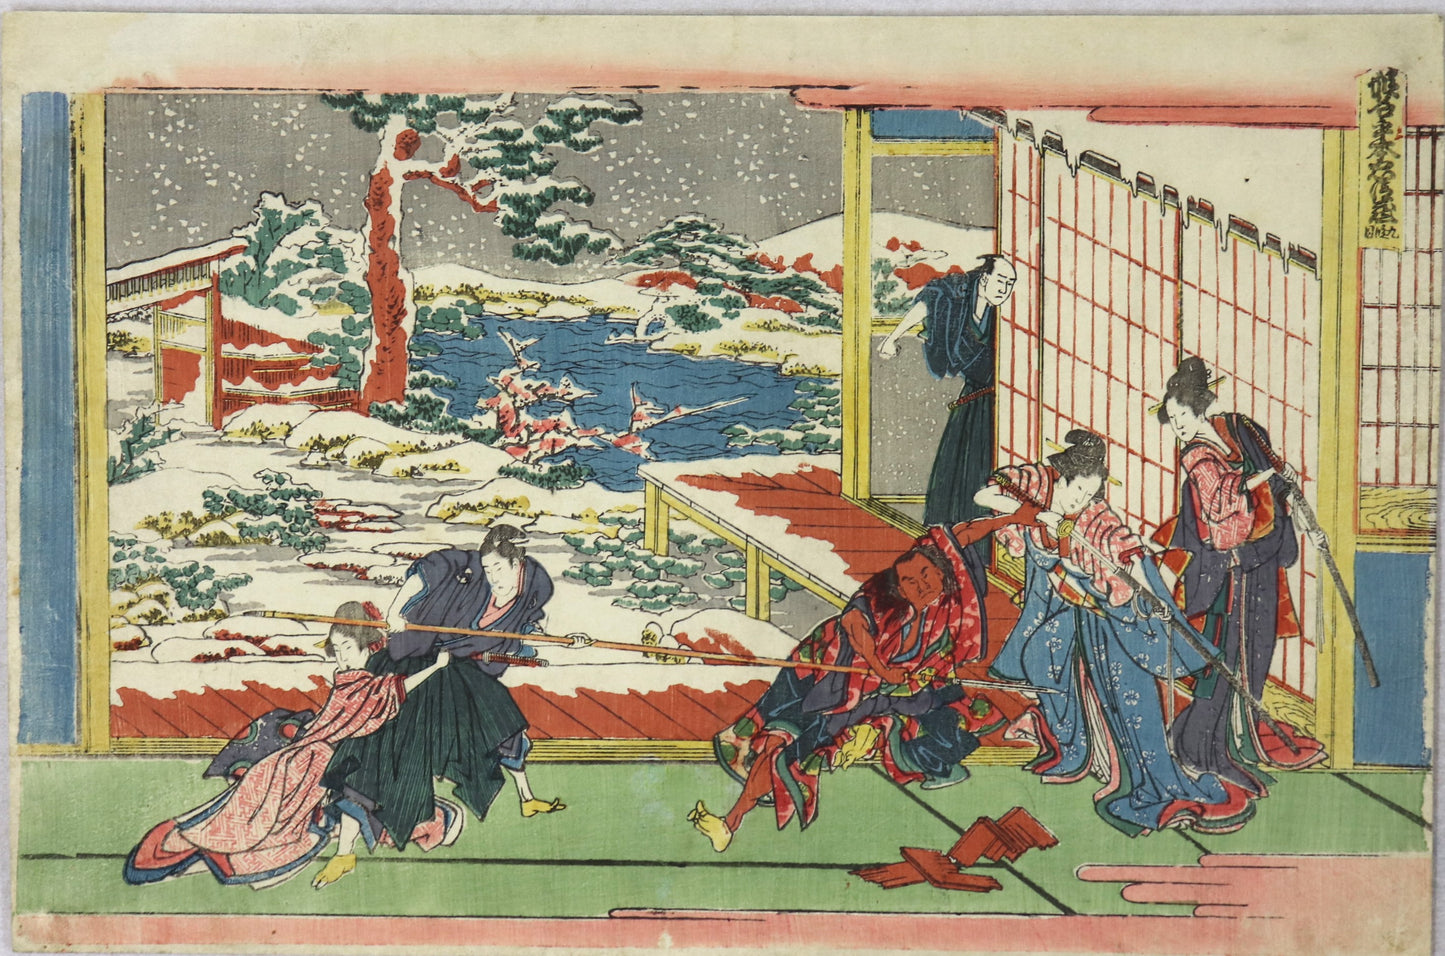 Act IX from the series " The Storehouse of Loyal Retainers " by Hokusai /Acte IX de la la série "L'entrepôt des fidèles serviteurs "( Kanadehon chûshingura) par Hokusai ( 1806)